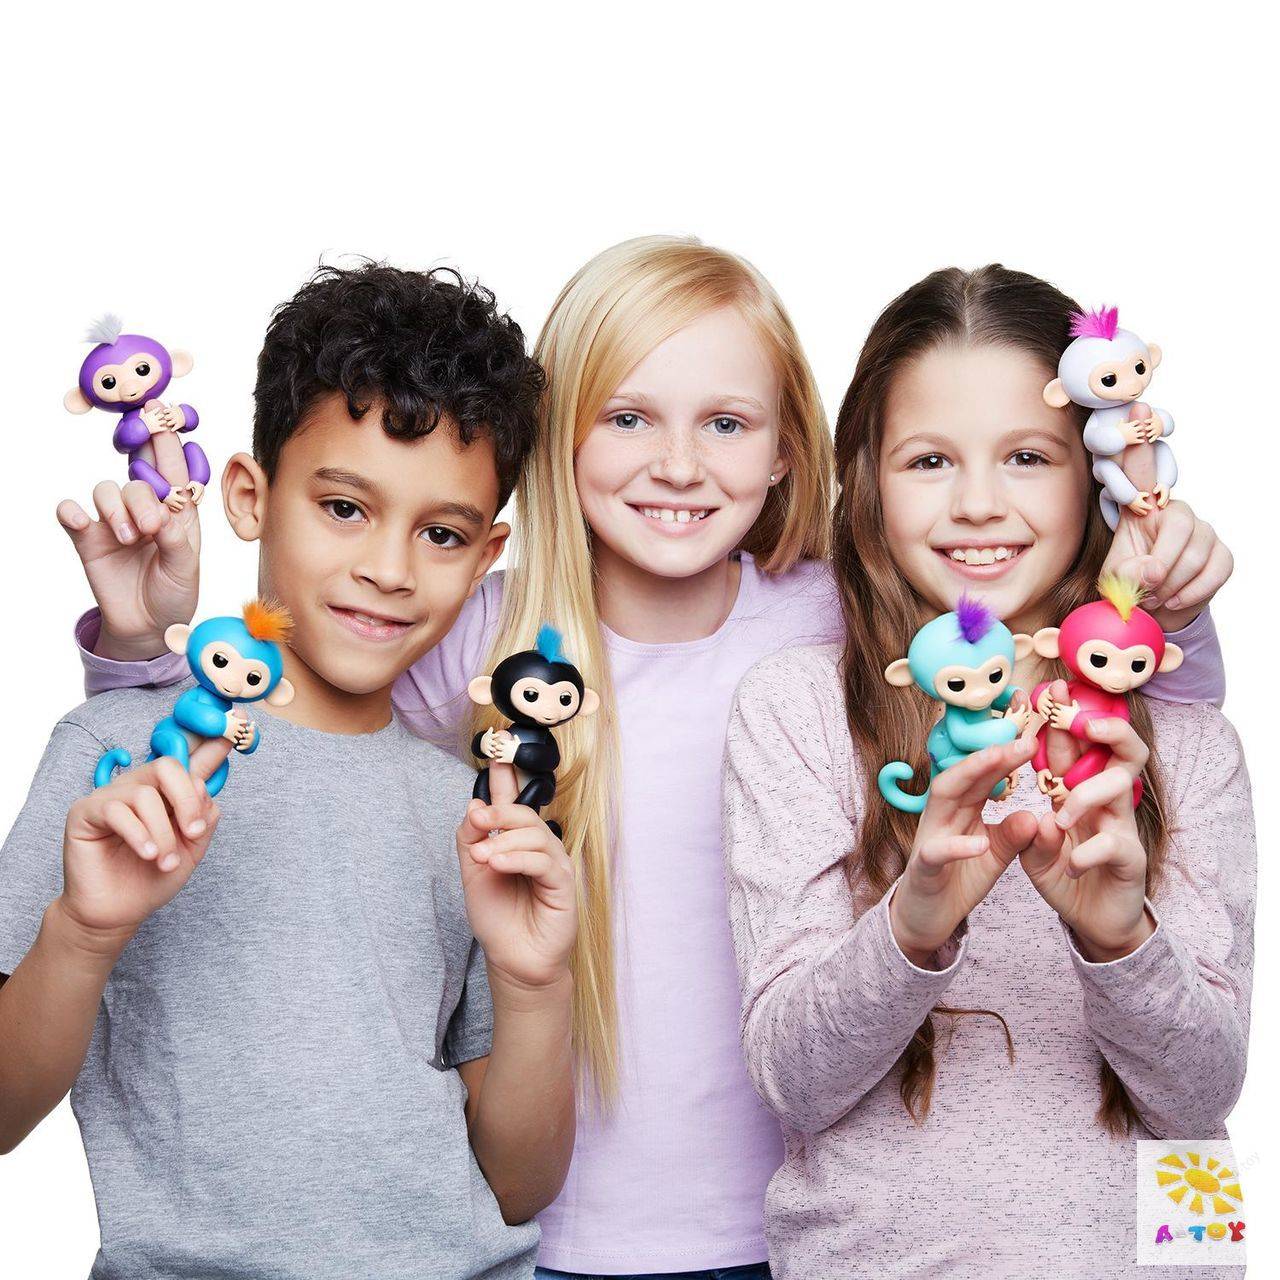 Игрушки нового поколения. Fingerlings, 3701a интерактивная обезьянка Финн (черная), 12см. Fingerlings, 3704a интерактивная обезьянка Миа (фиолетовая), 12см. Модные игрушки для детей.